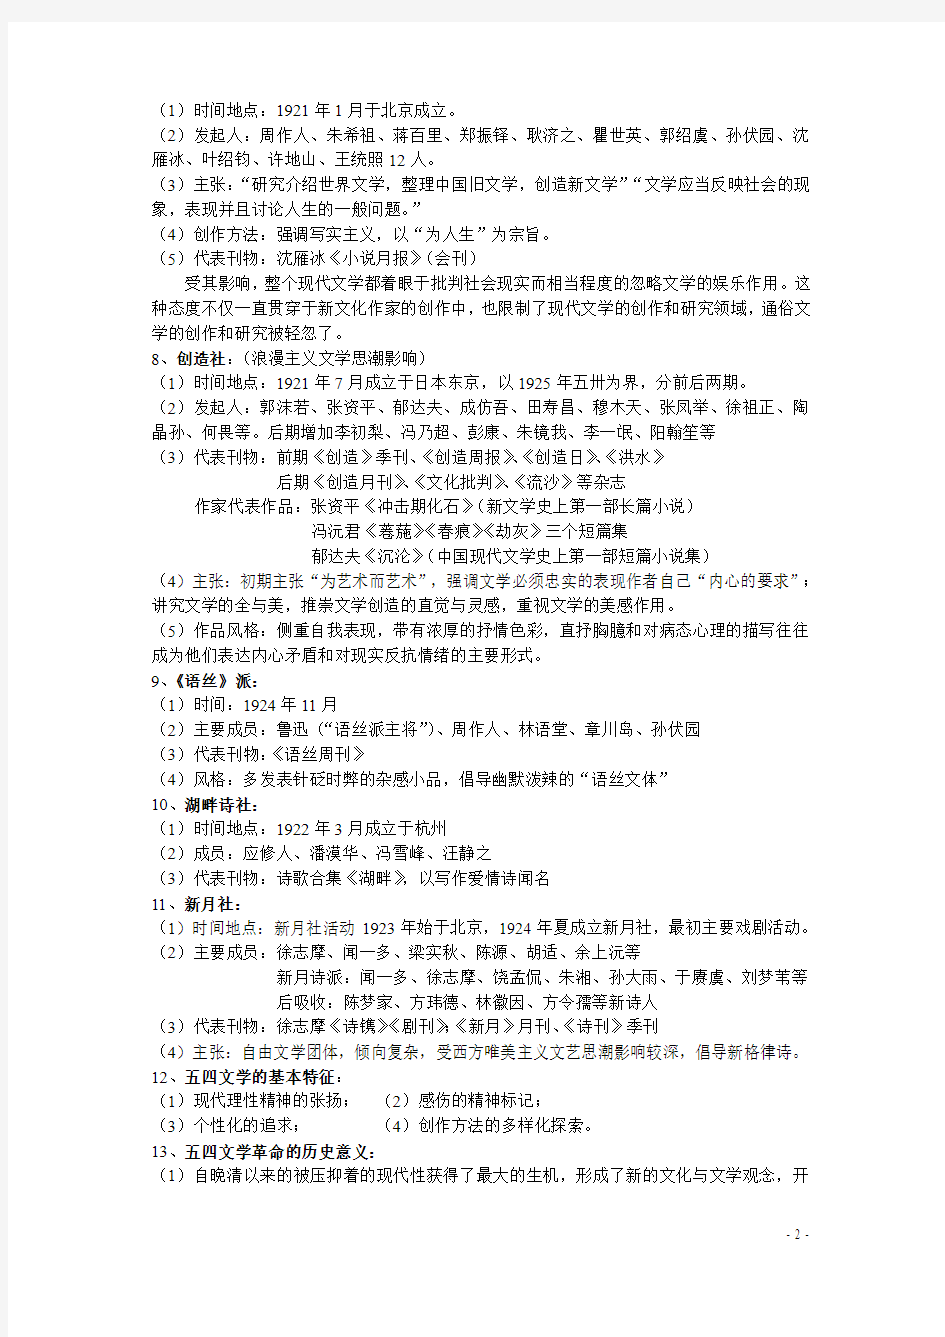 中国现代文学史复习资料(上)